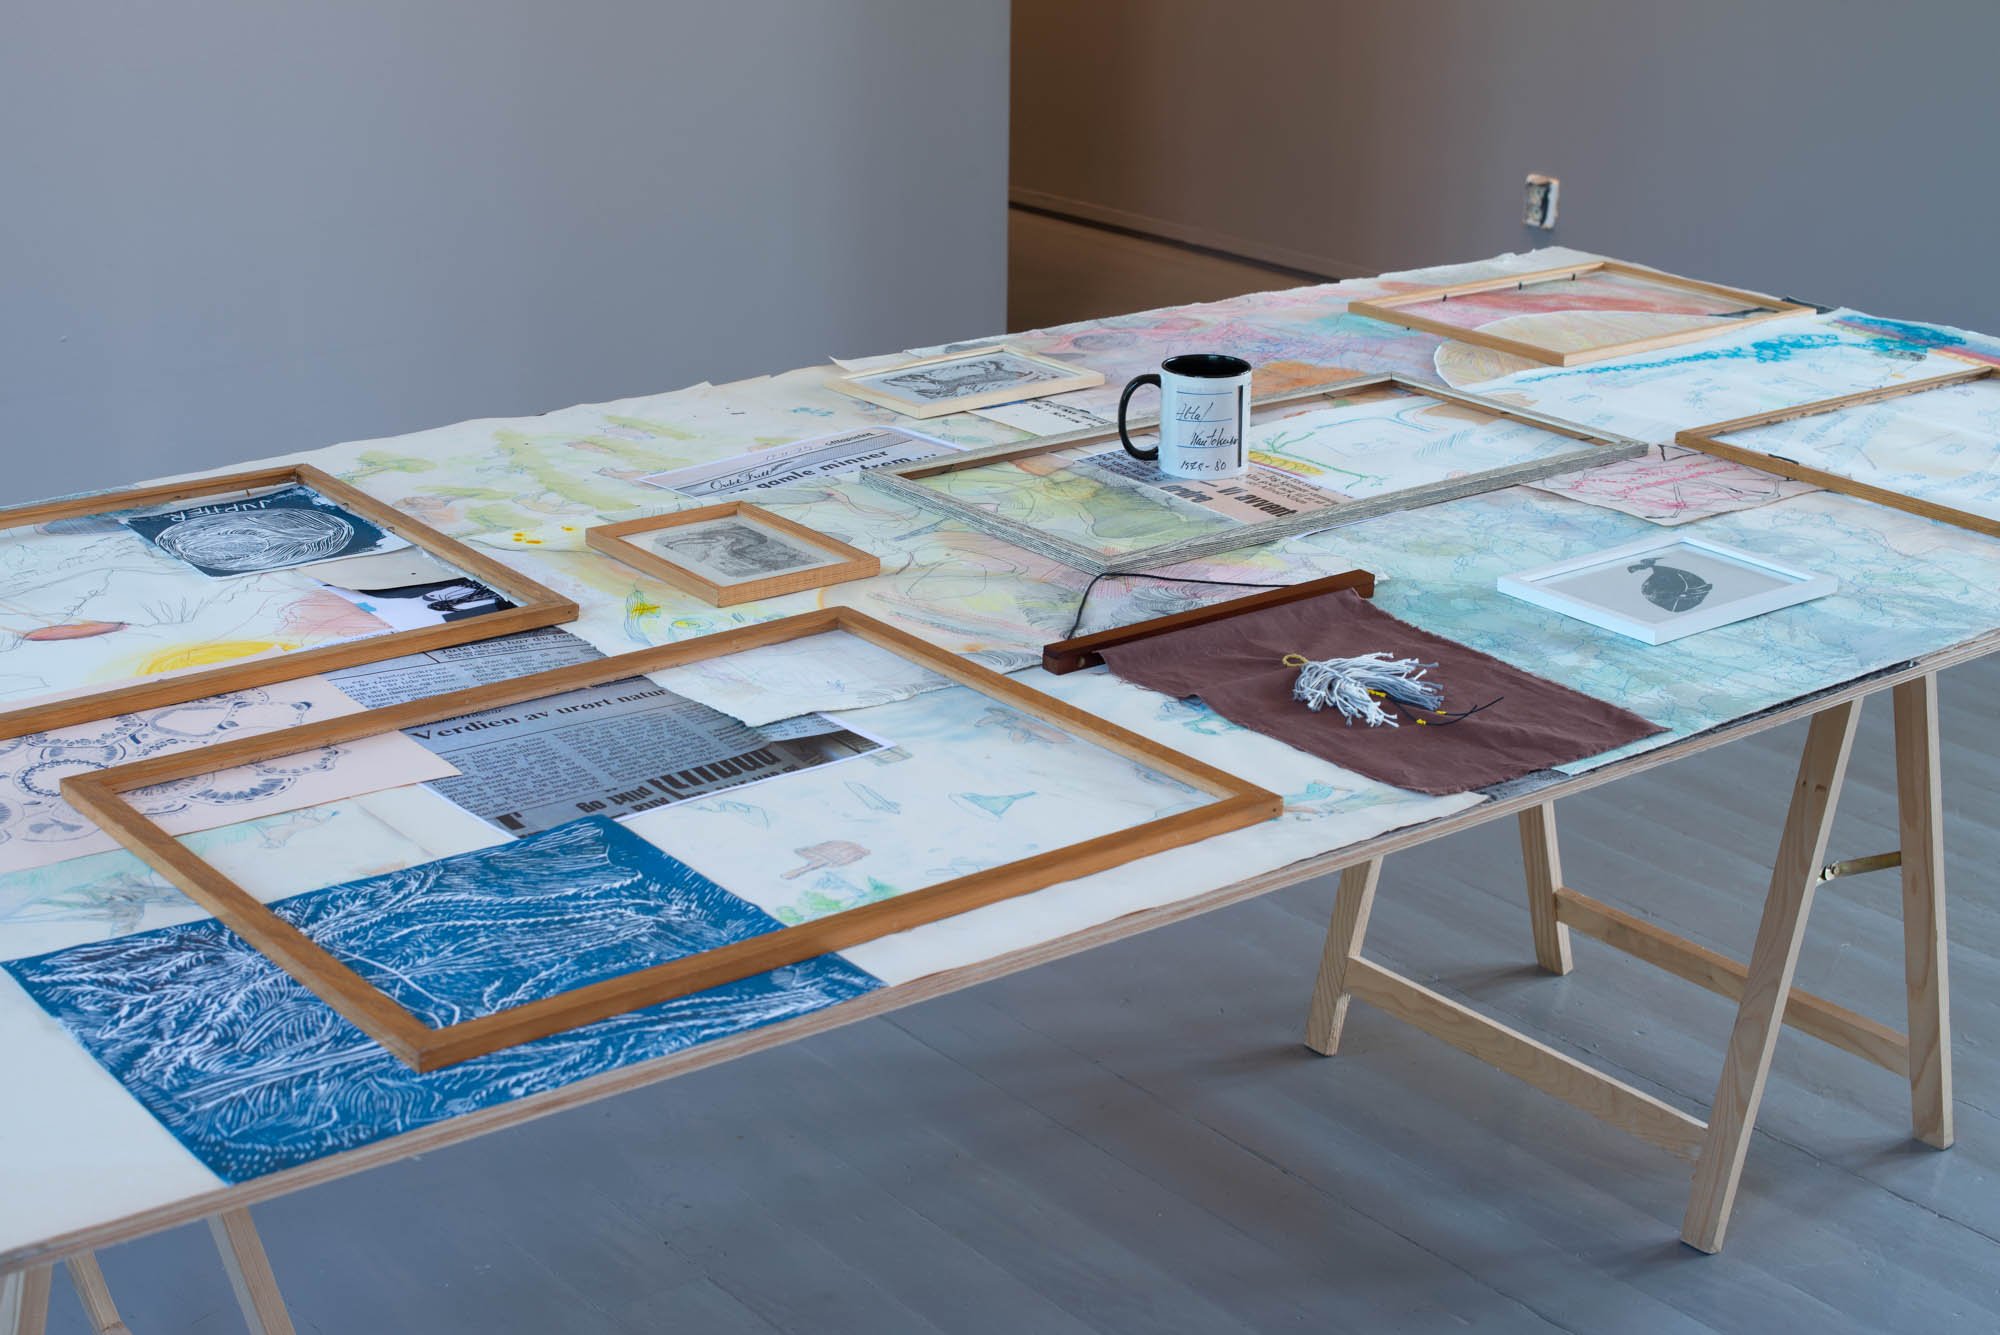  Detalj av  Koppen bordet på bordet  (2021) av Kristin Tårnesvik. Foto: Mihály Stefanovicz/Tromsø Kunstforening 